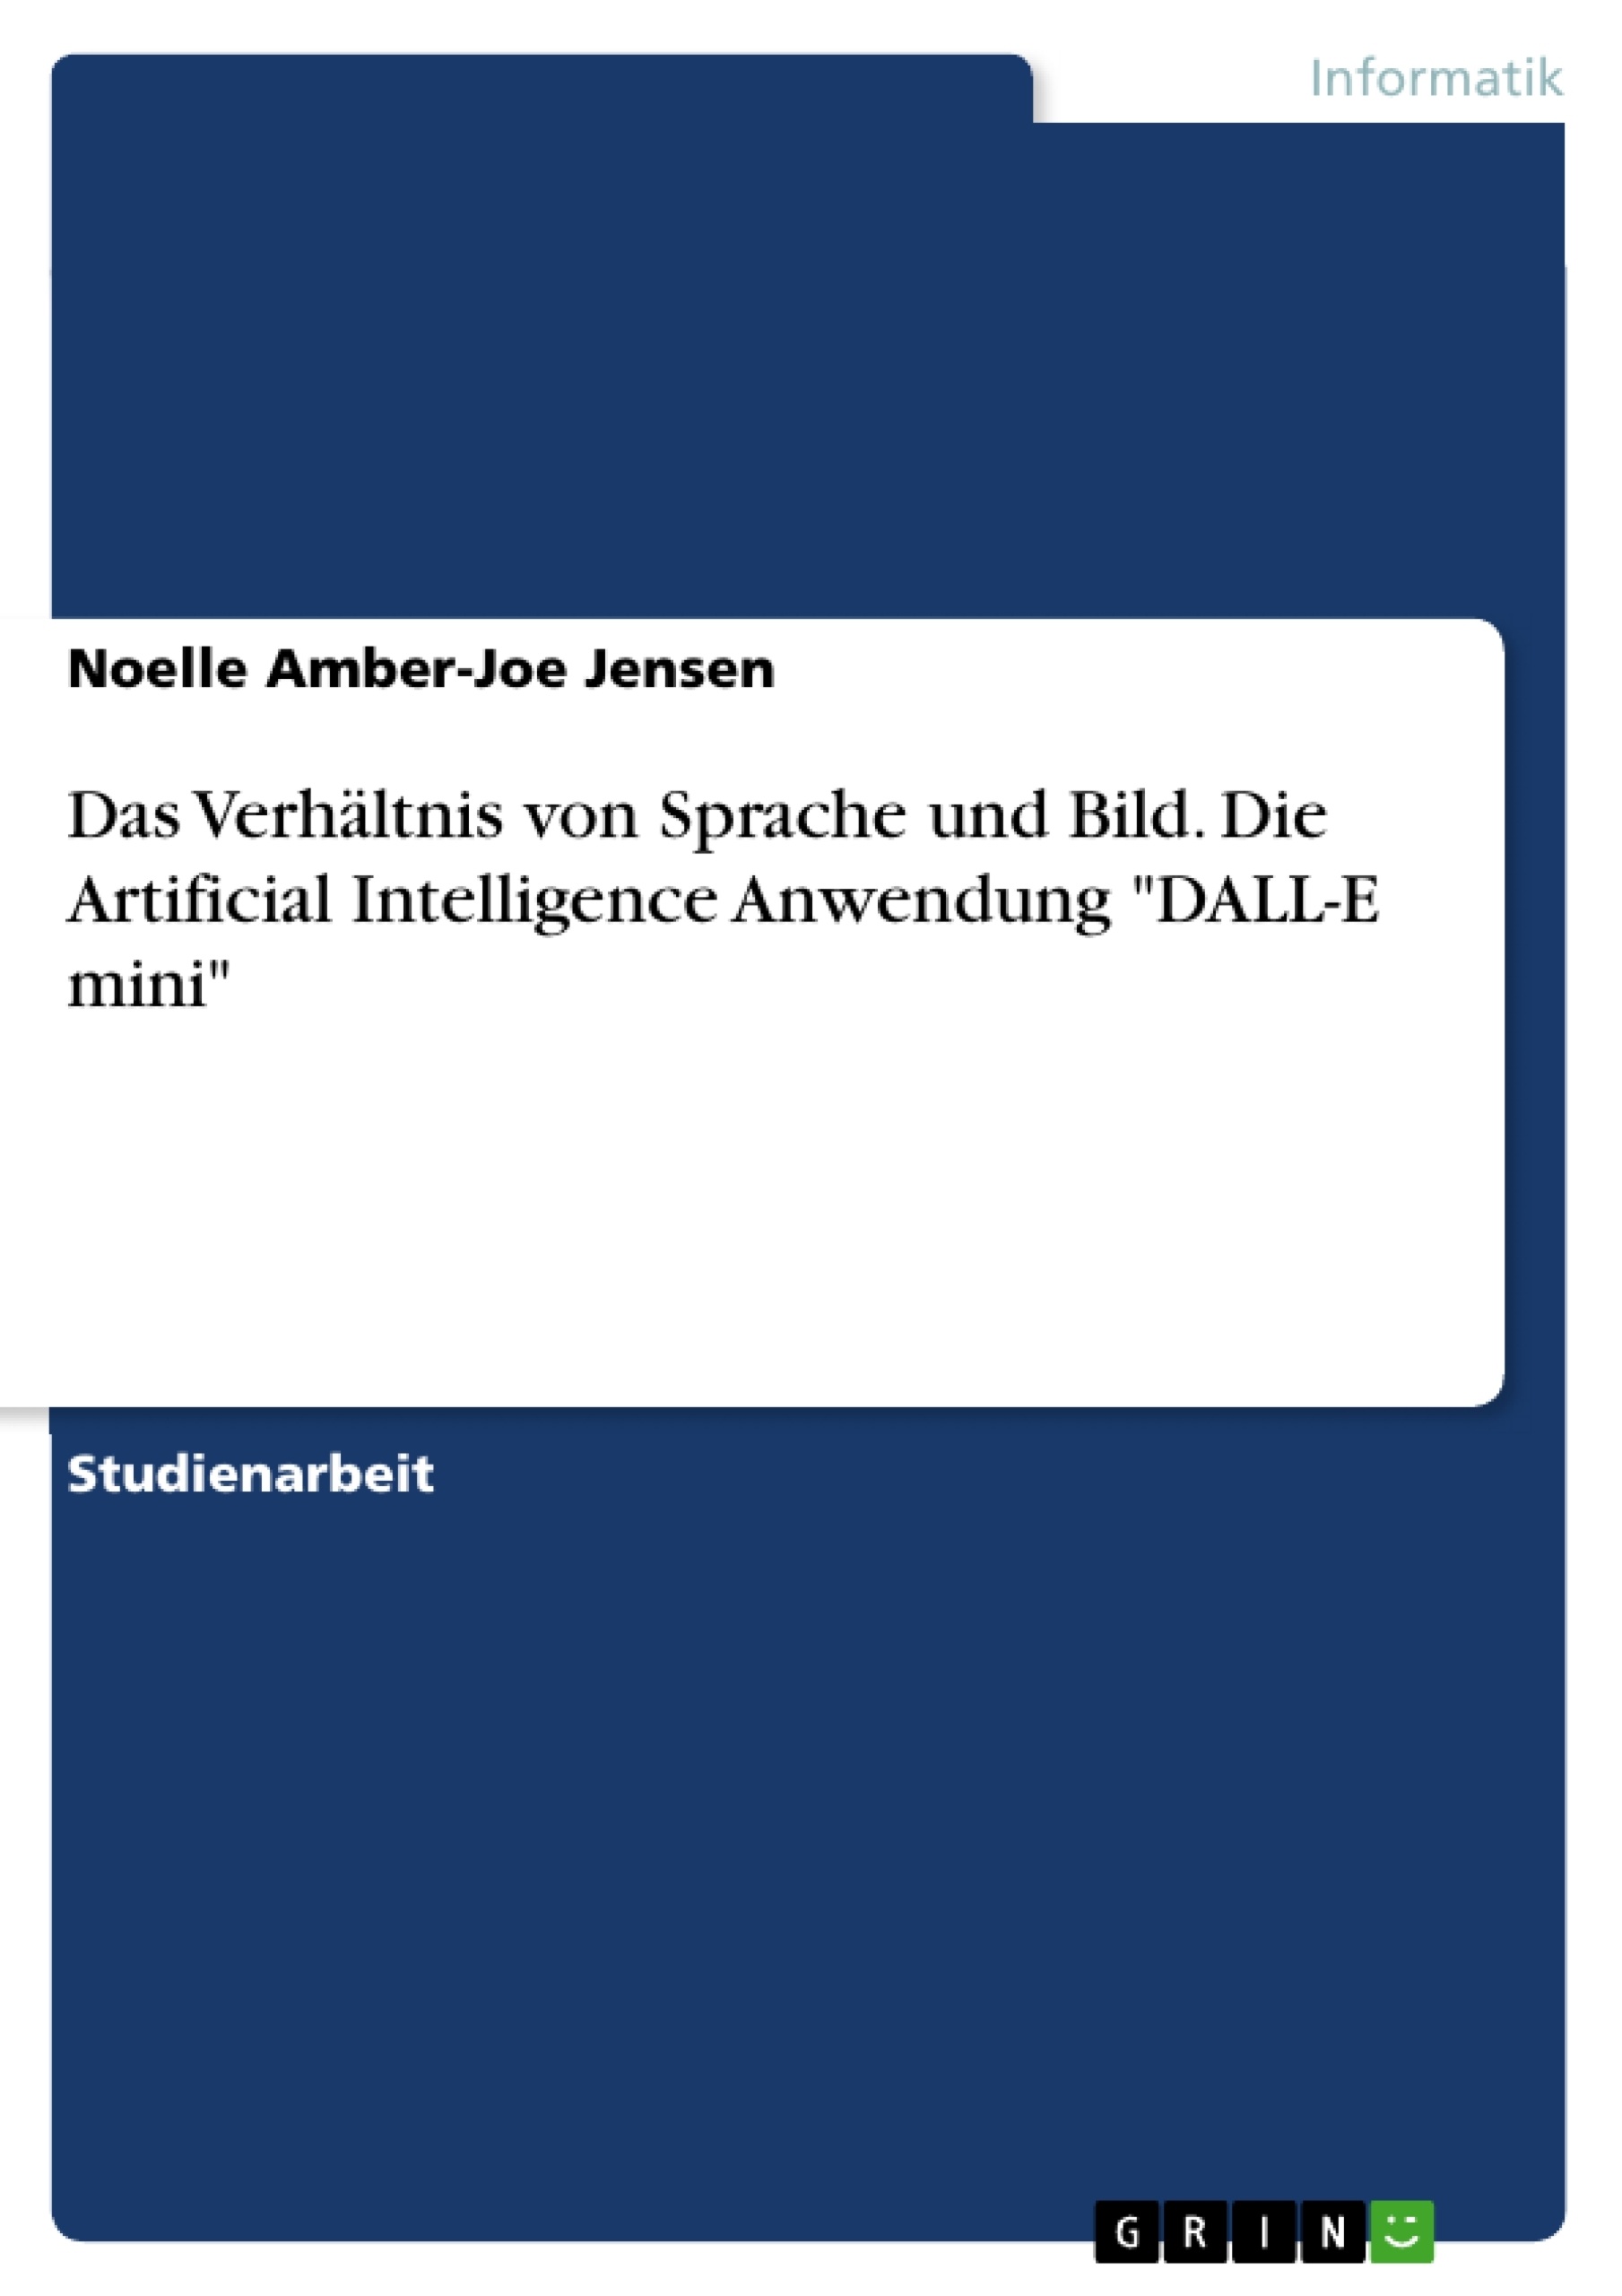 Titel: Das Verhältnis von Sprache und Bild. Die Artificial Intelligence Anwendung "DALL-E mini"